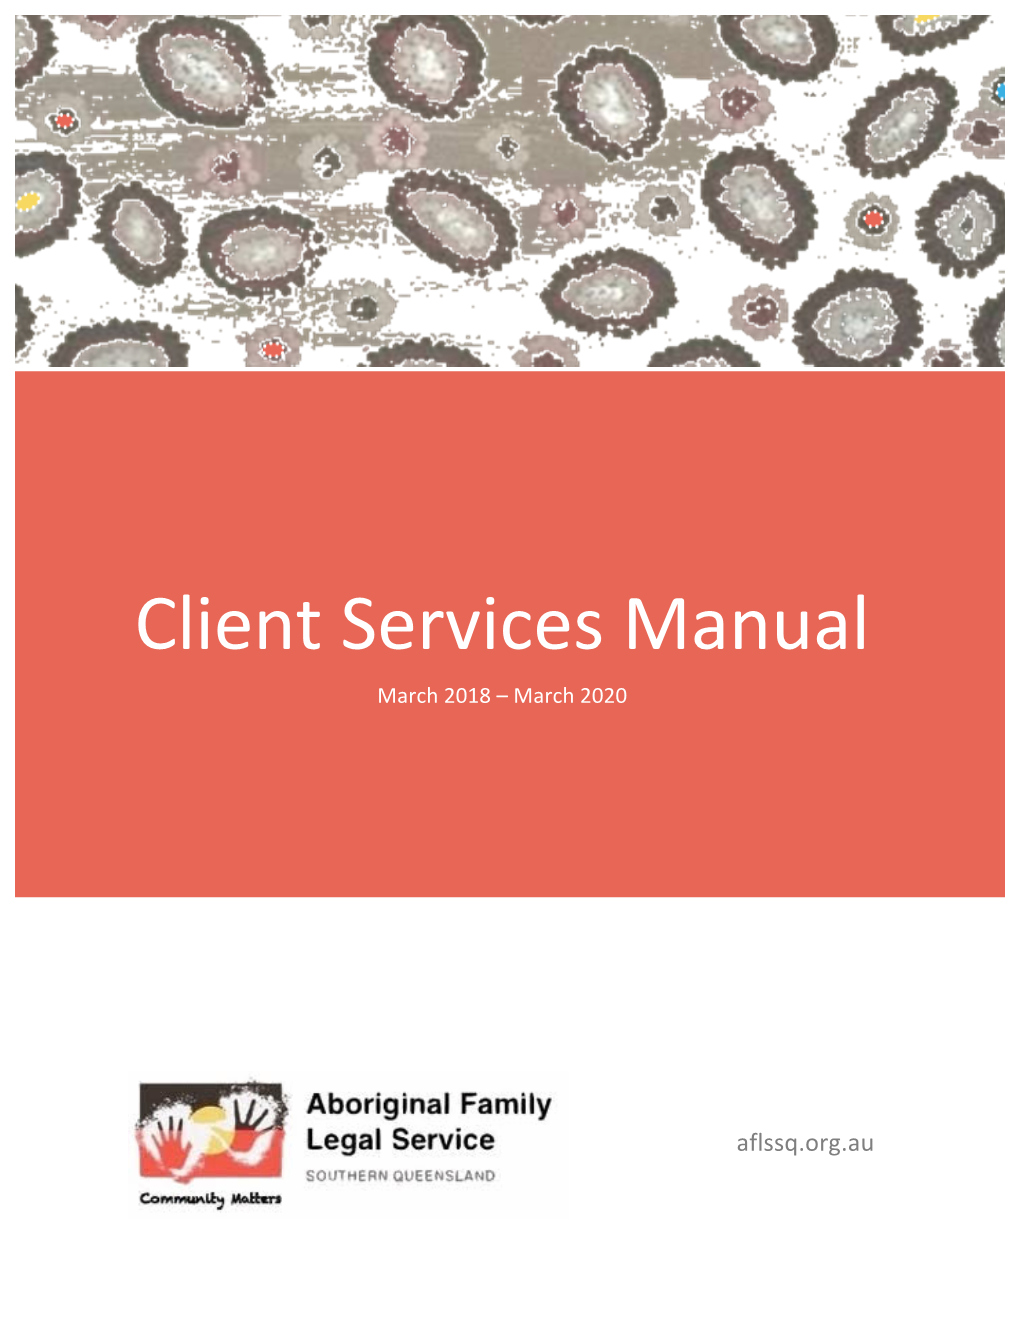 AFLSSQ Client Services Manual 2018